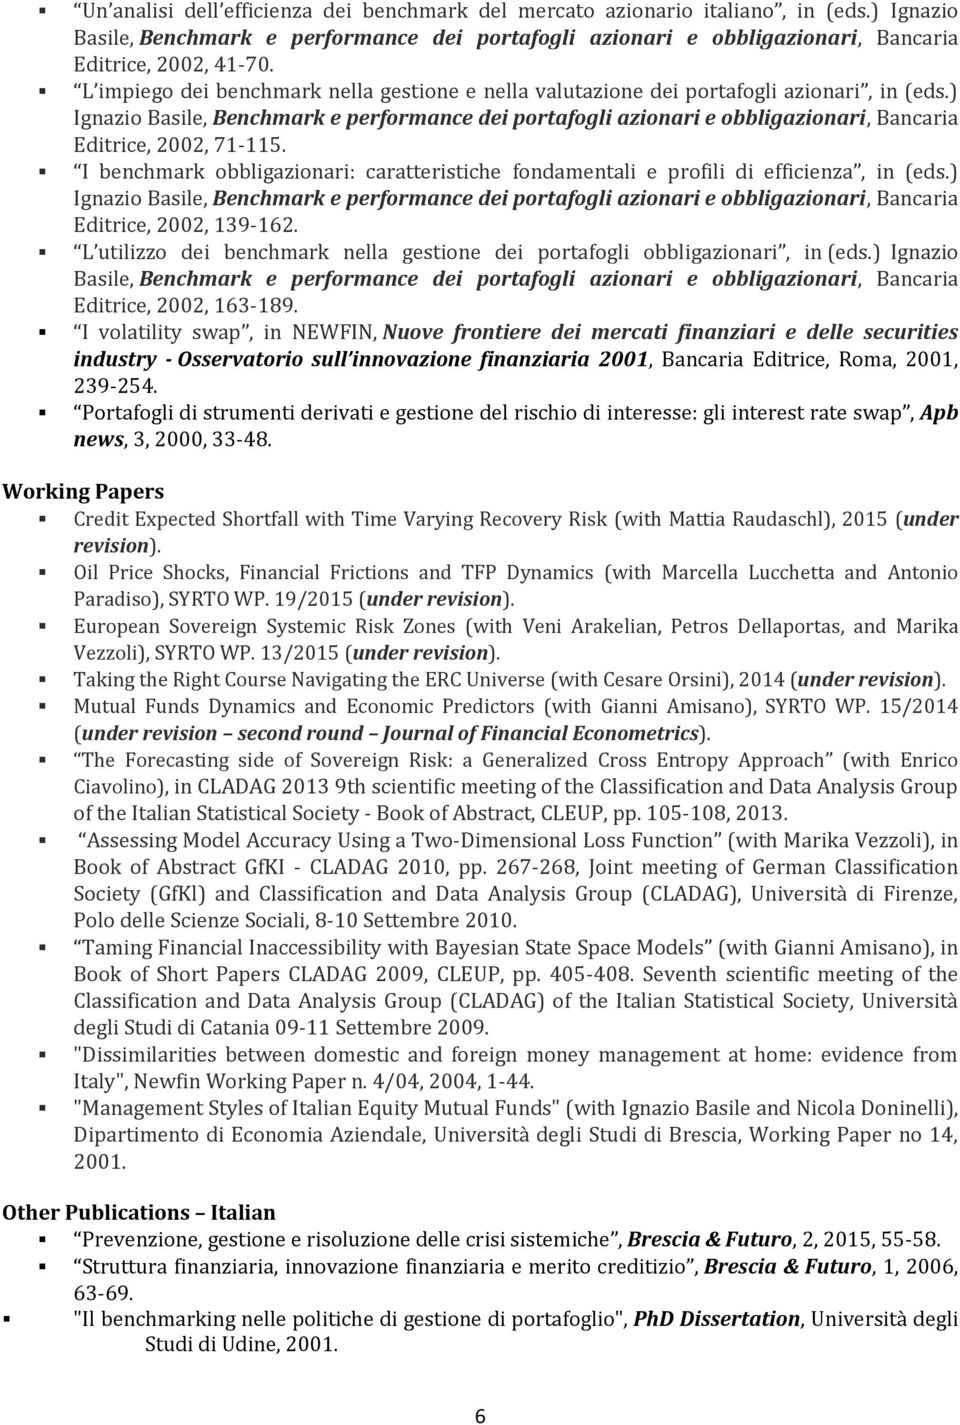 ) Ignazio Basile, Benchmark e performance dei portafogli azionari e obbligazionari, Bancaria Editrice, 2002, 71-115.